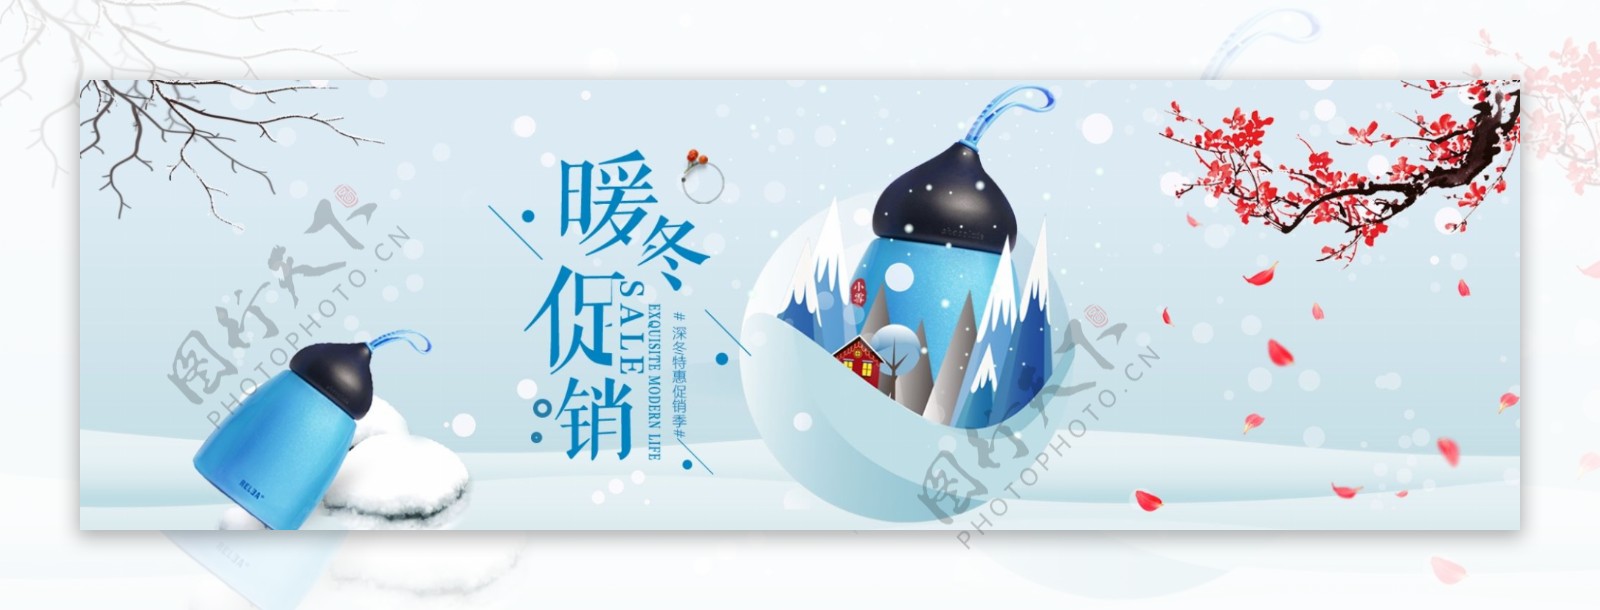 冬季动漫风保温系列促销banner